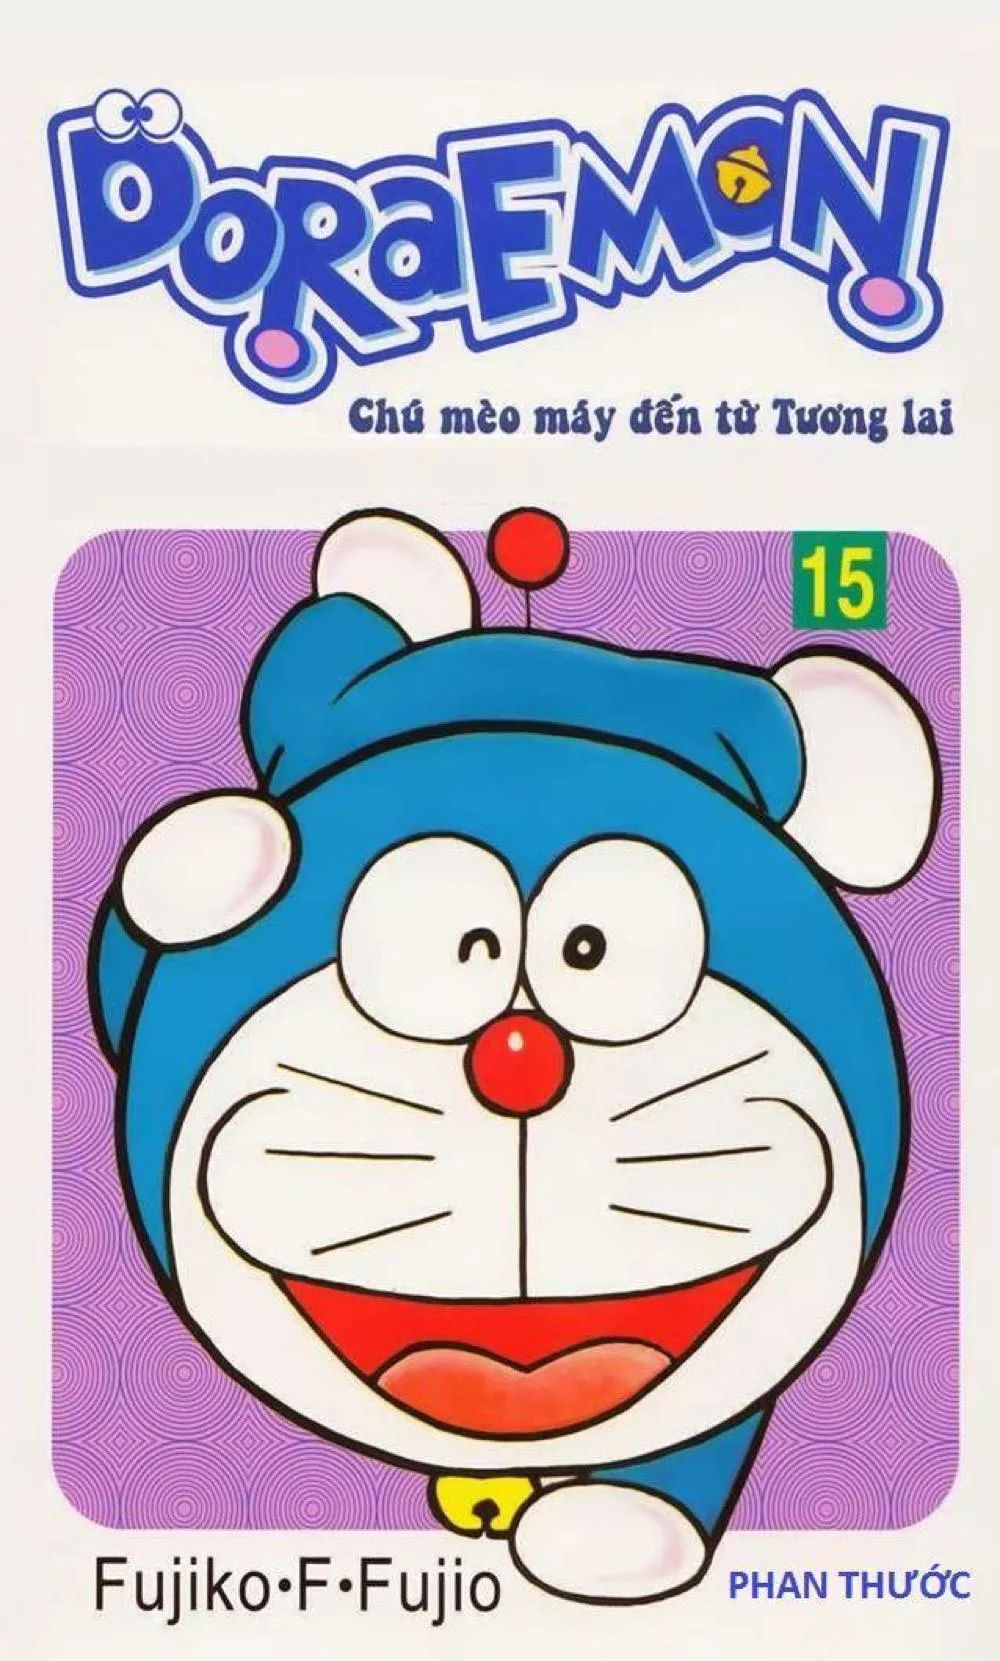 Cùng khám phá vũ trụ đáng yêu của Doraemon qua các trang truyện tranh vô cùng thú vị! Hãy nhấn vào hình ảnh sách vẽ truyện Doraemon để khám phá thêm nhiều chuyện hấp dẫn và những tình tiết thần kỳ của Doraemon và những người bạn.